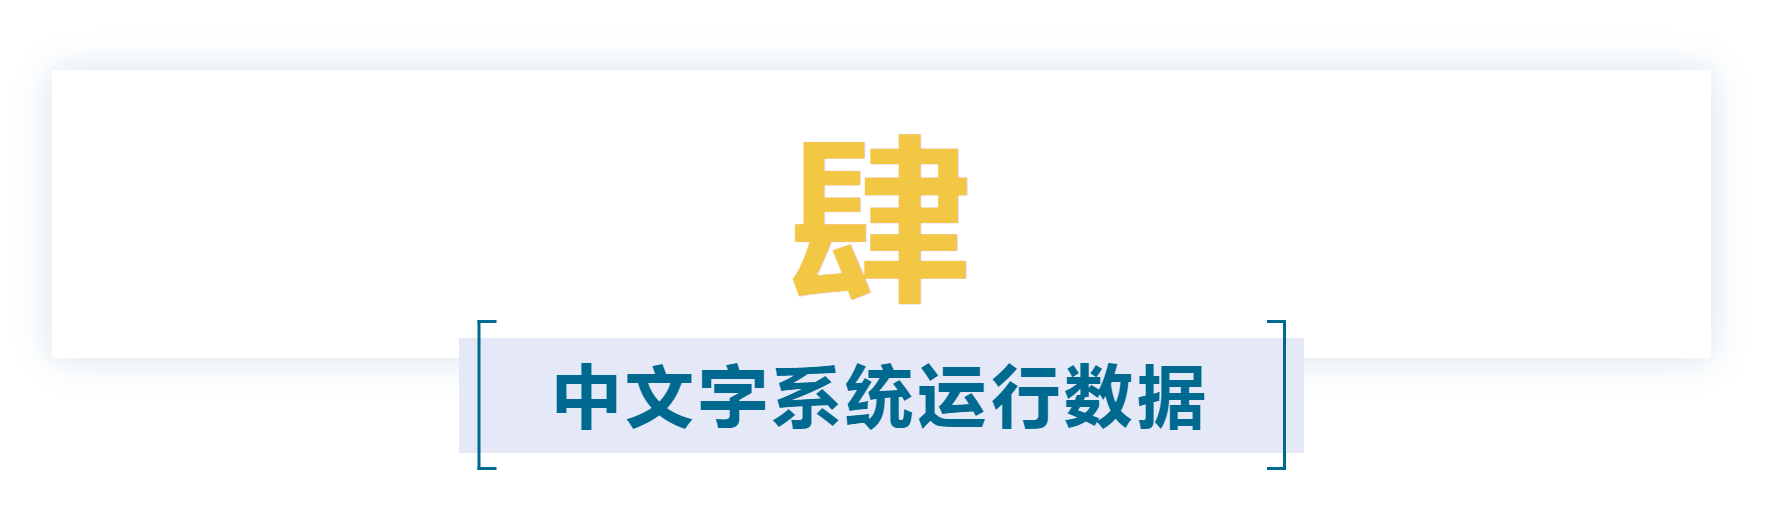 报告上集 | 《认文识字·中文字信息精准化》报告「建议收藏」